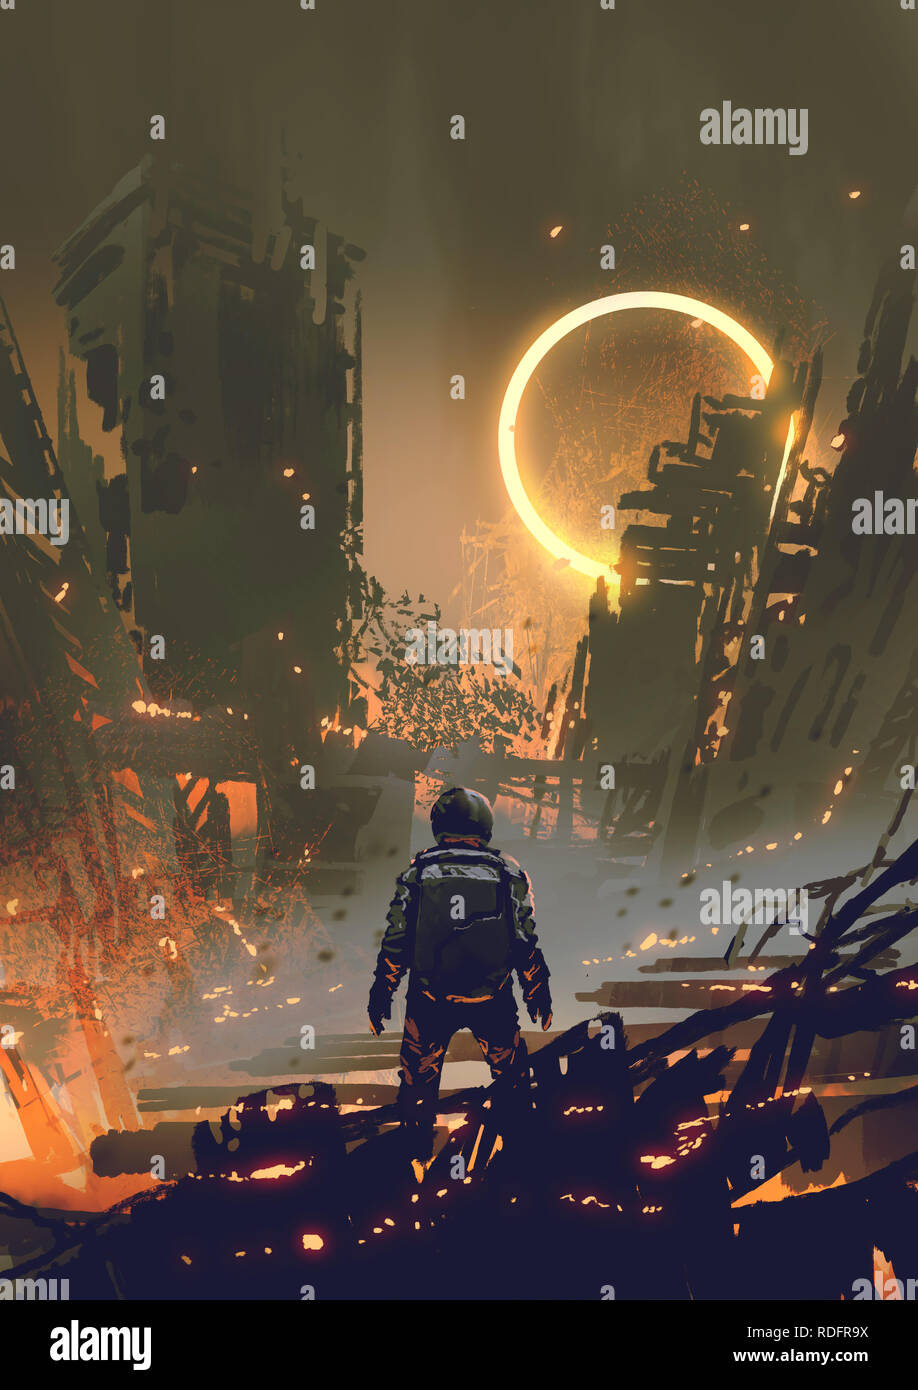 Astronaut in einer verbrannten Stadt und betrachten eine gelb leuchtende Ring in den dunklen Himmel, digital art Stil, Illustration Malerei Stockfoto